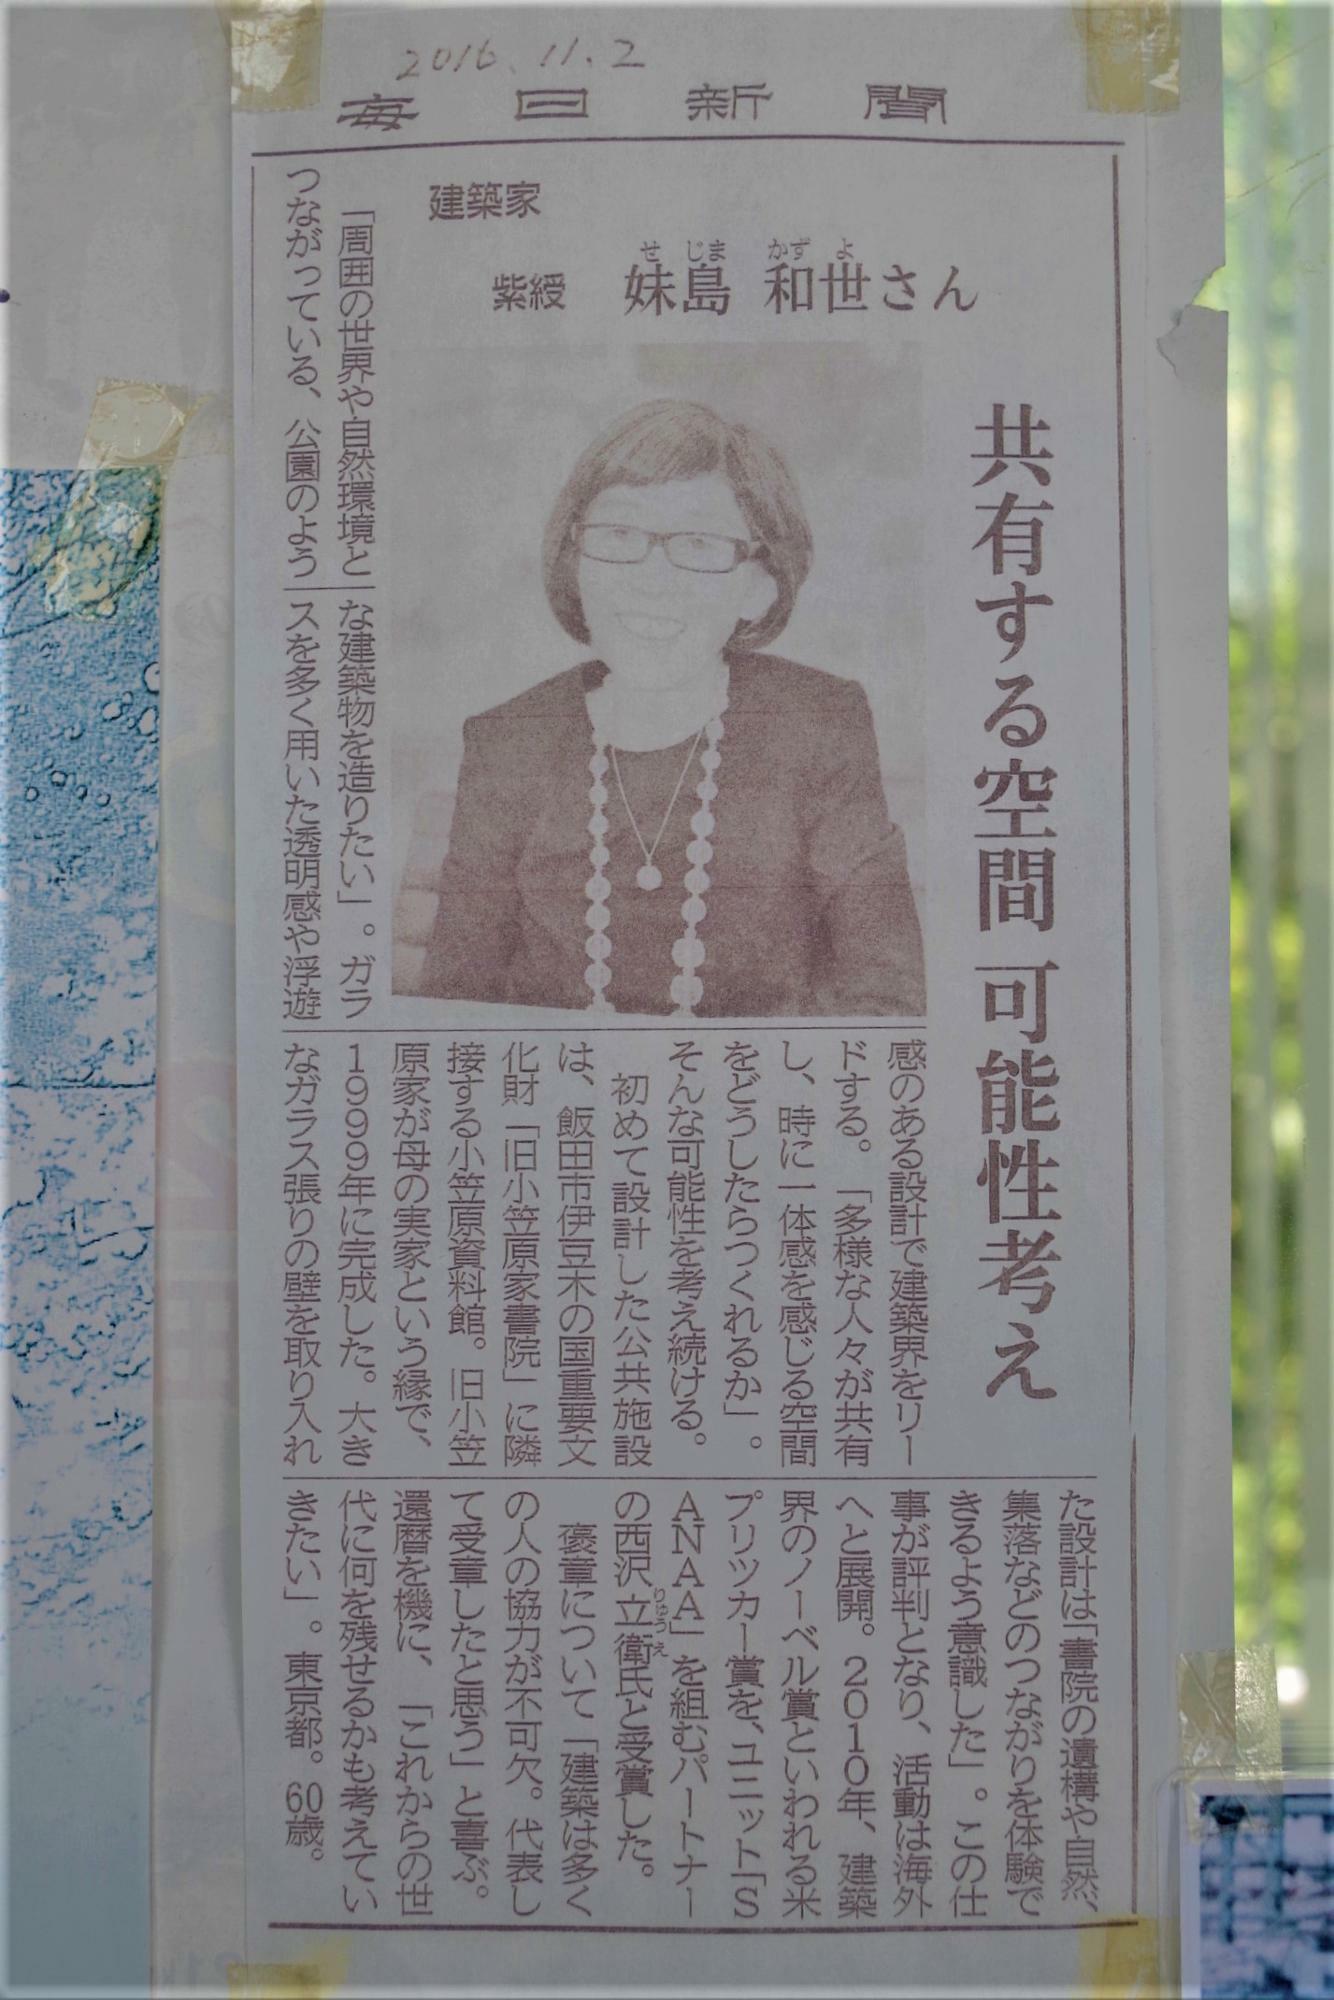 2016年11月2日、建築家の妹島和世氏紫綬褒章を伝える毎日新聞の記事切り抜き